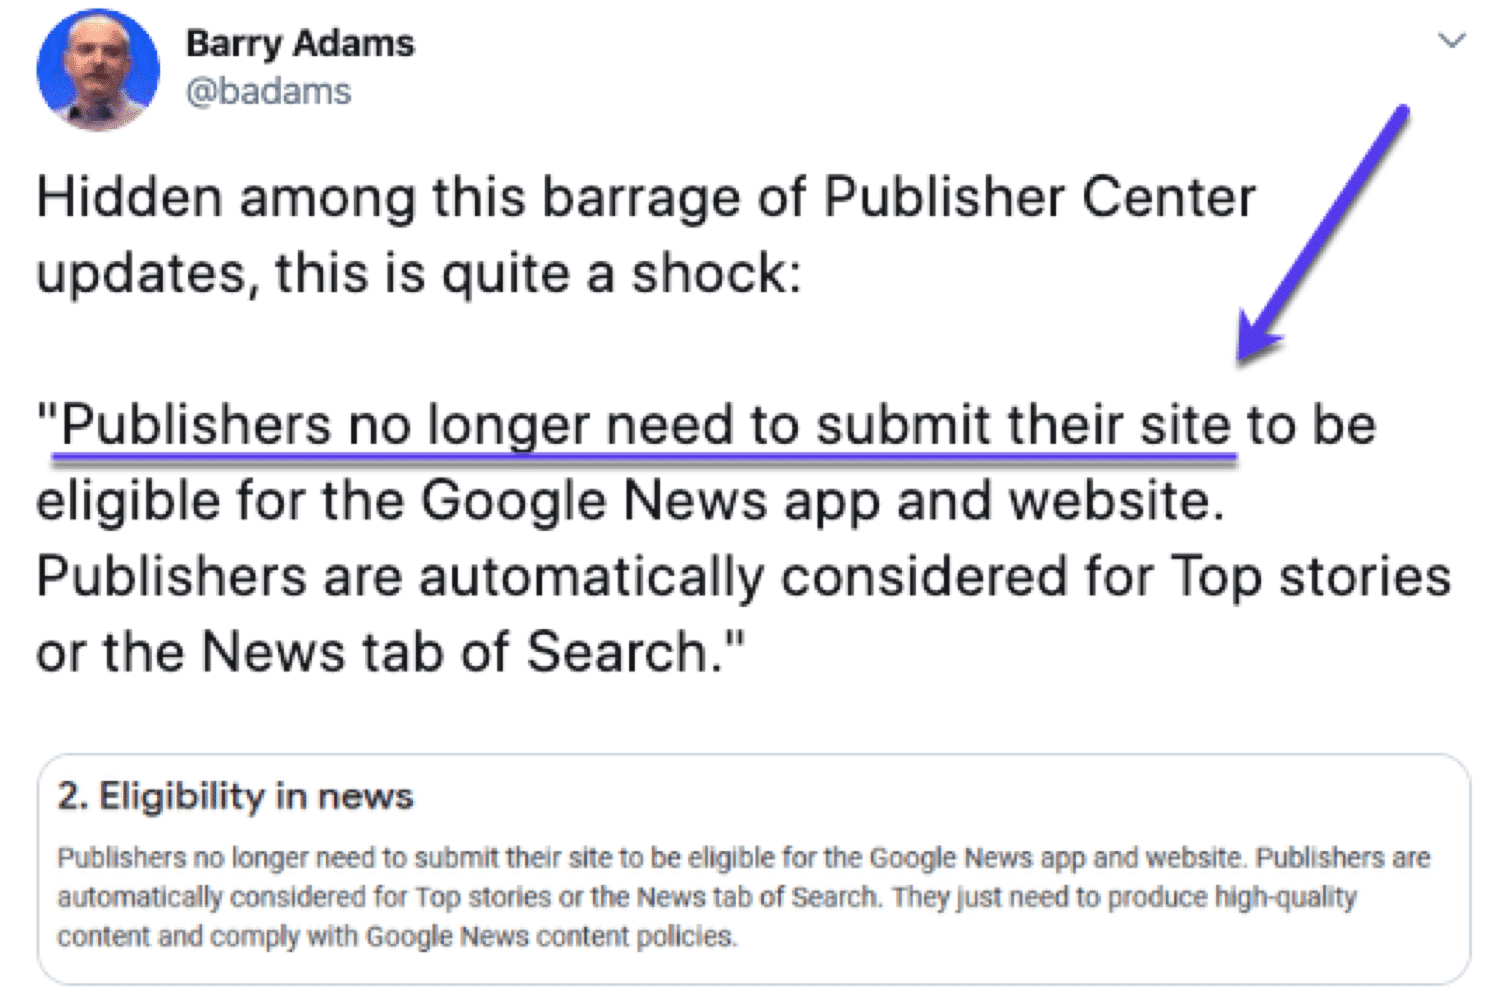 Barry Adams ha notato che gli editori non hanno bisogno di trasmettere manualmente i loro siti